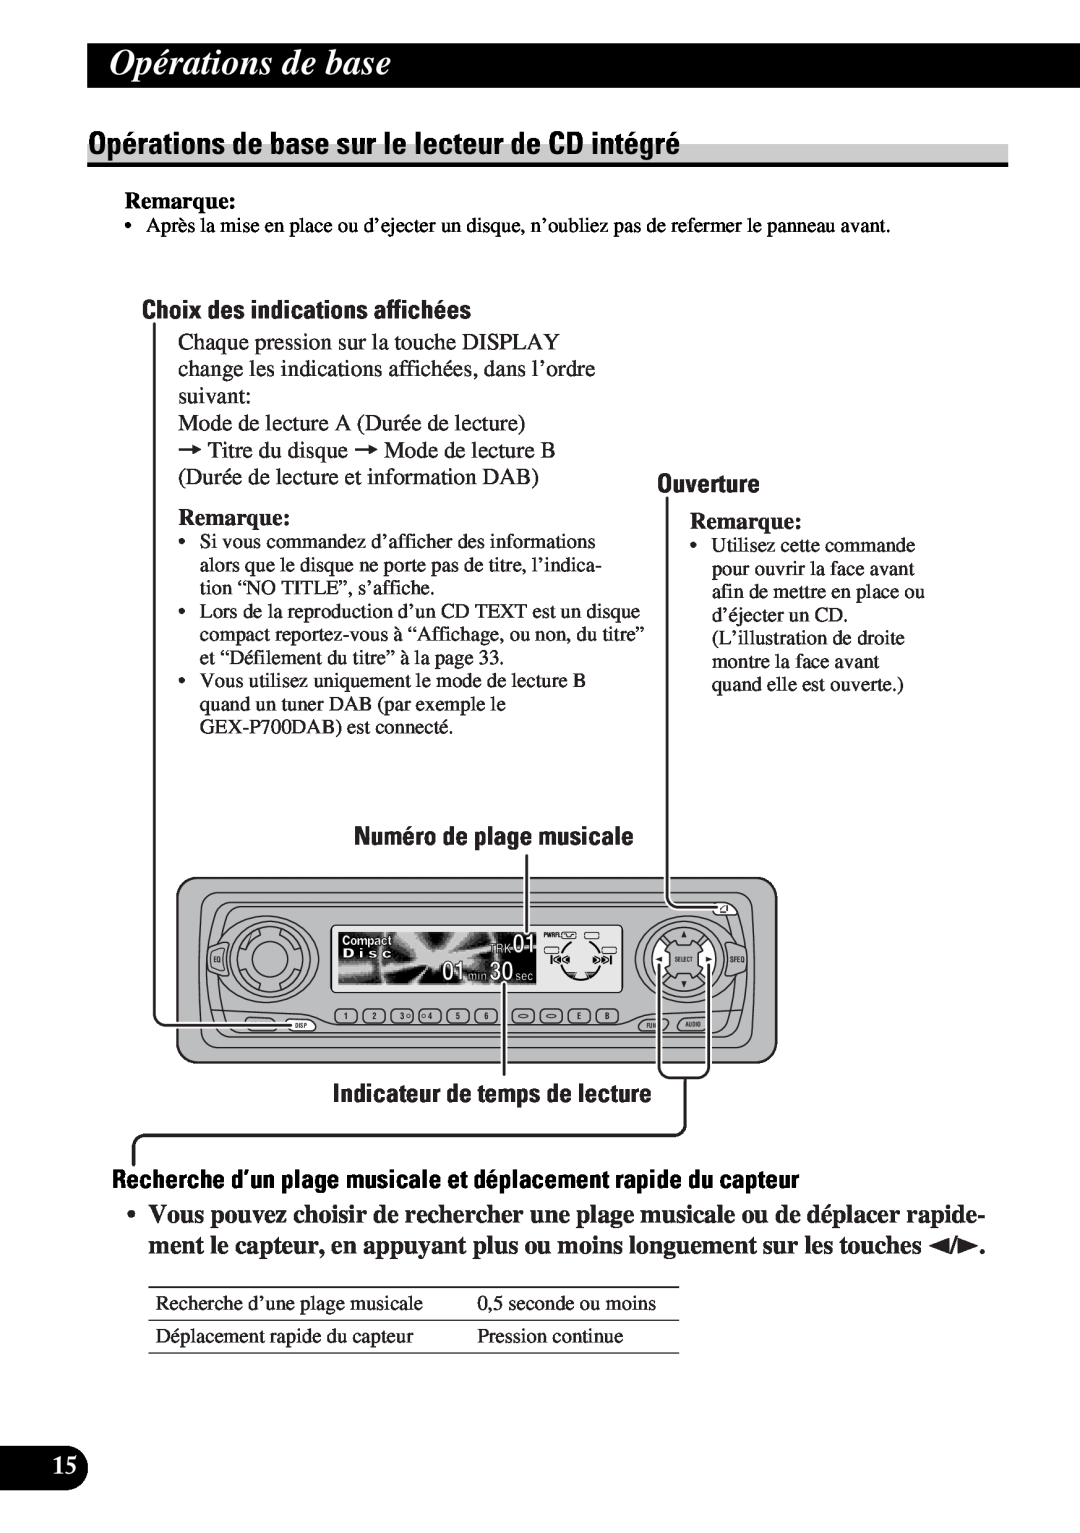 Pioneer DEH-P730 Opérations de base sur le lecteur de CD intégré, Choix des indications affichées, Ouverture, Remarque 